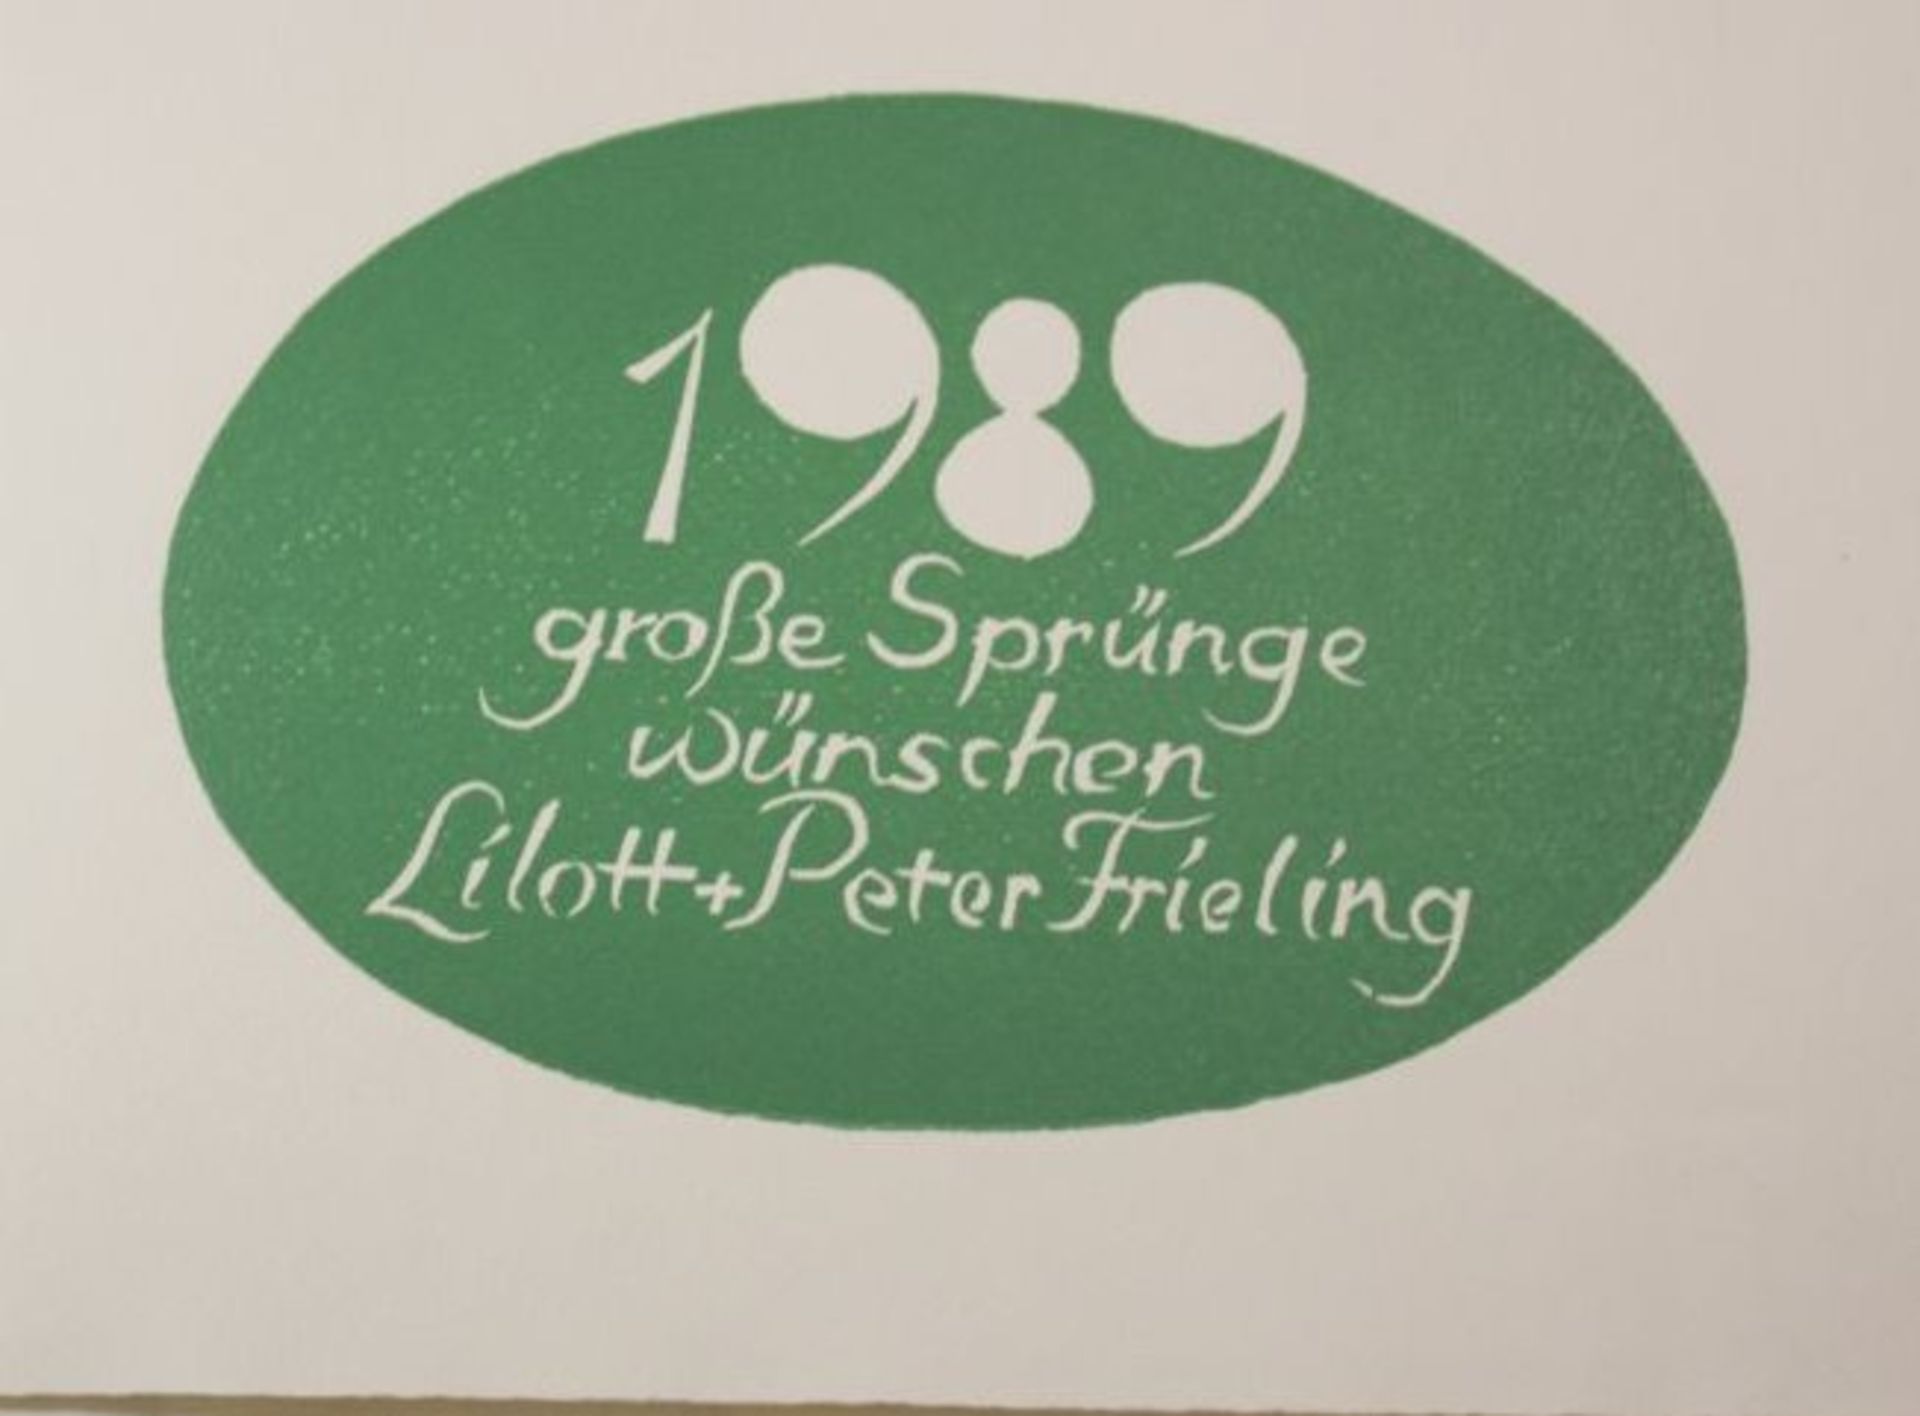 Peter Frieling 88, Radierung, als Glückwunschkarte, ca. BG 15 x 21cm. - Bild 2 aus 2